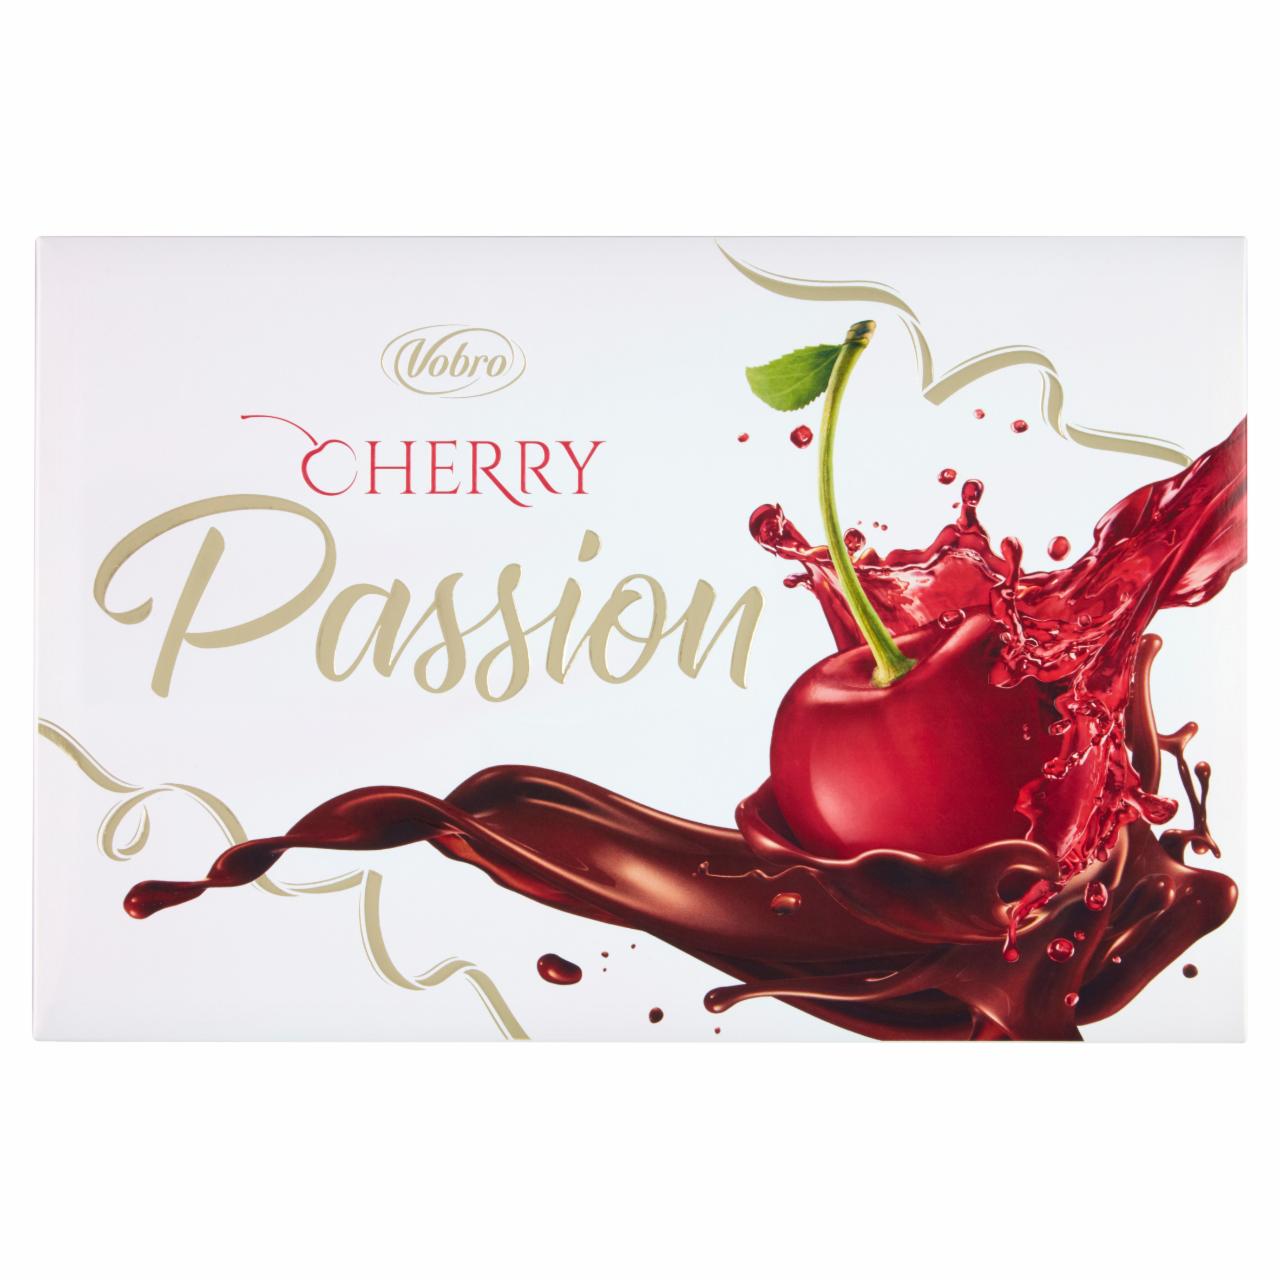 Zdjęcia - Vobro Cherry Passion Czekoladki nadziewane wiśnią w alkoholu 140 g